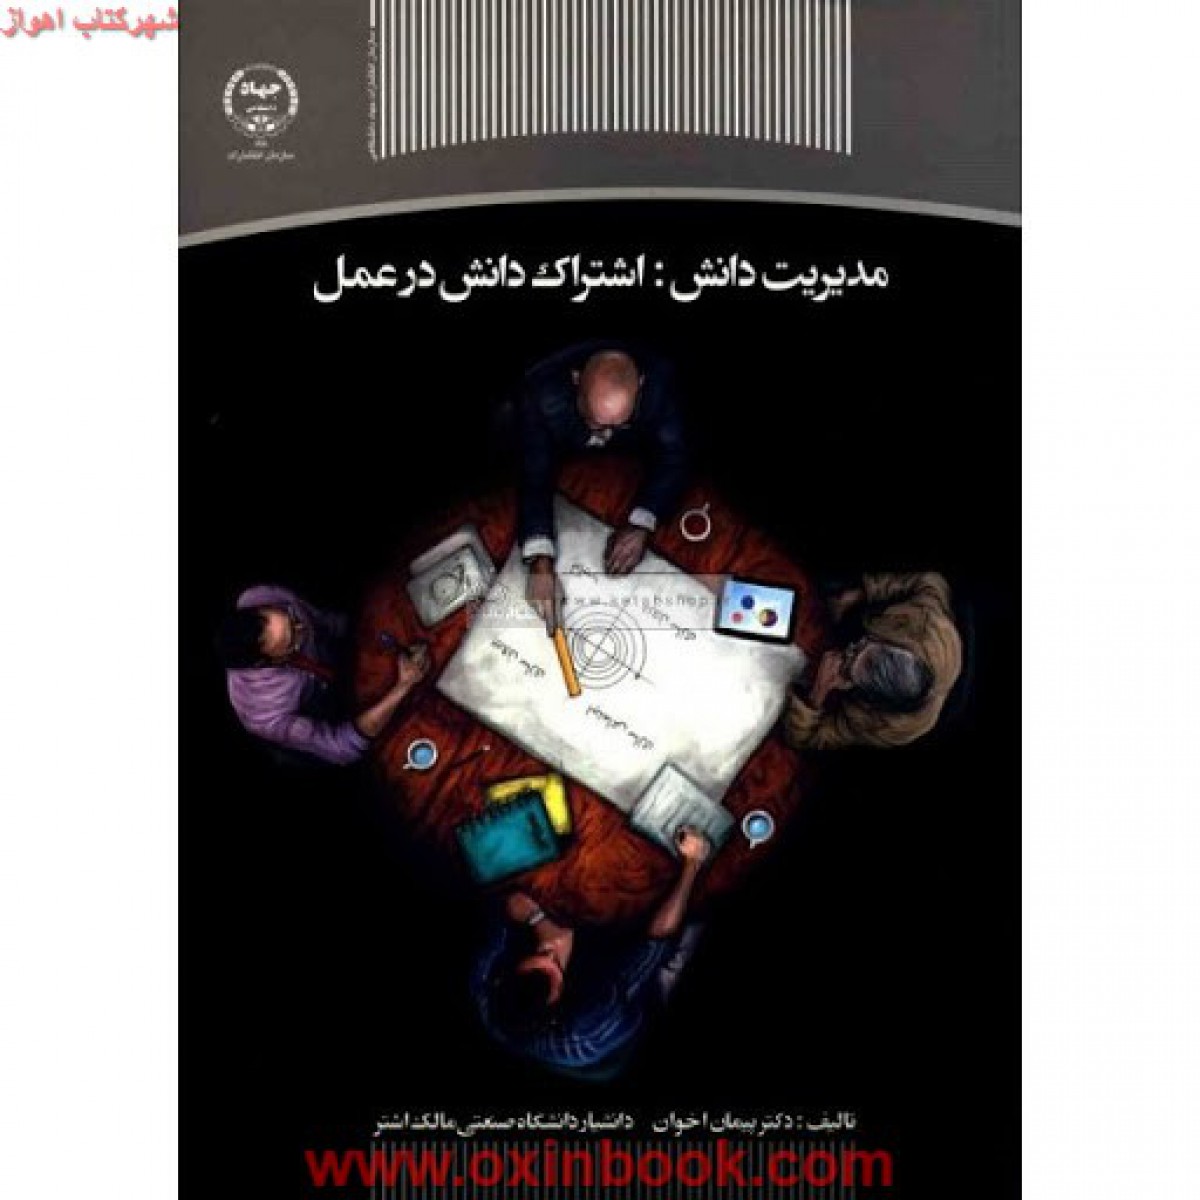 مدیریت دانش(اشتراک دانش درعمل)پیمان اخوان/جهاددانشگاهی